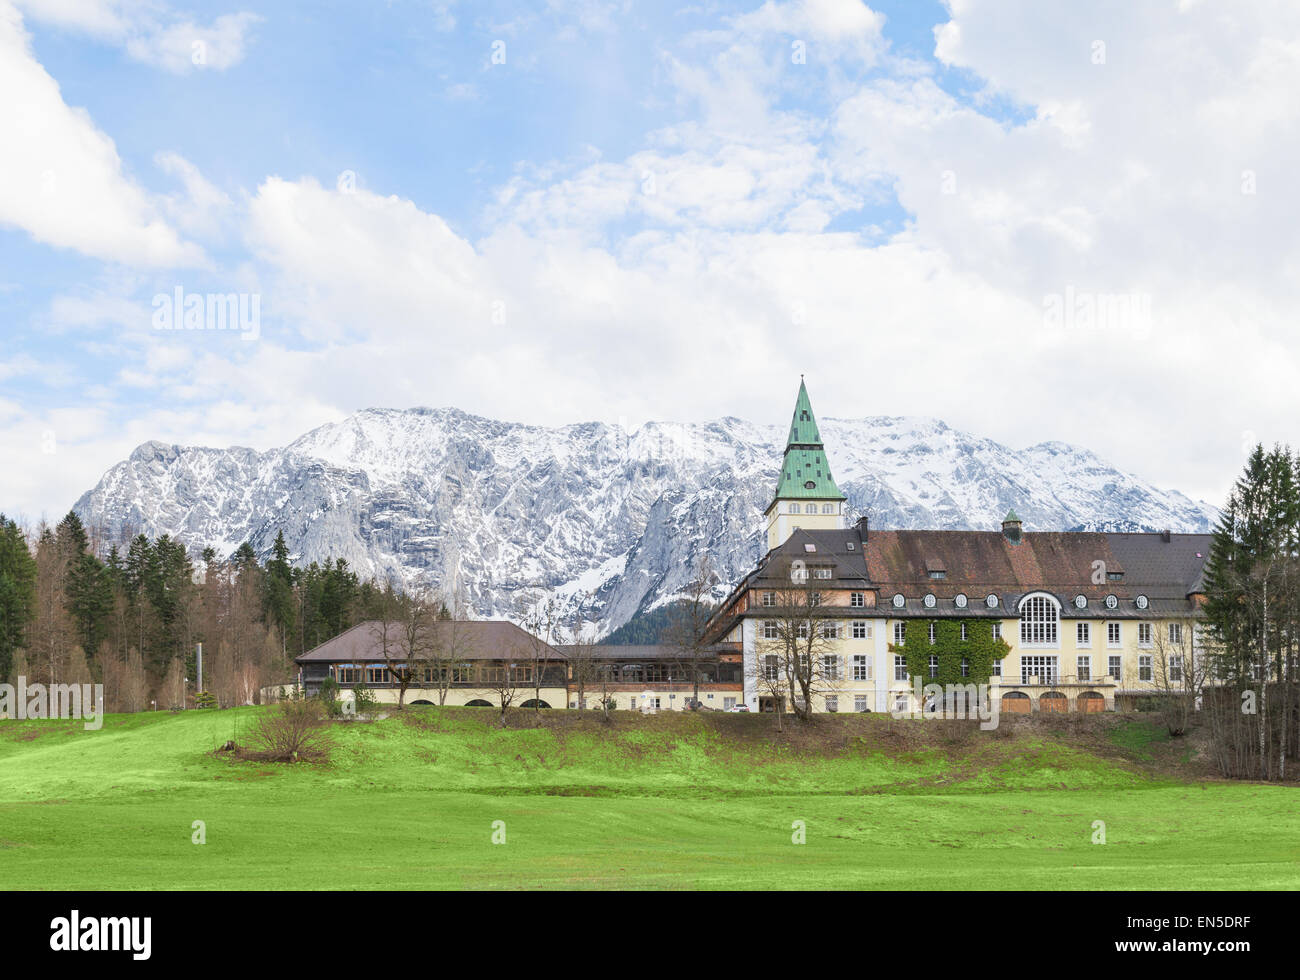 Hotel Schloss Elmau bavarese nella valle alpina sarà il sito del vertice G7 nel 2015. Il G7 ha scelto luoghi remoti per i suoi incontri annuali per diversi anni per motivi di sicurezza. Foto Stock